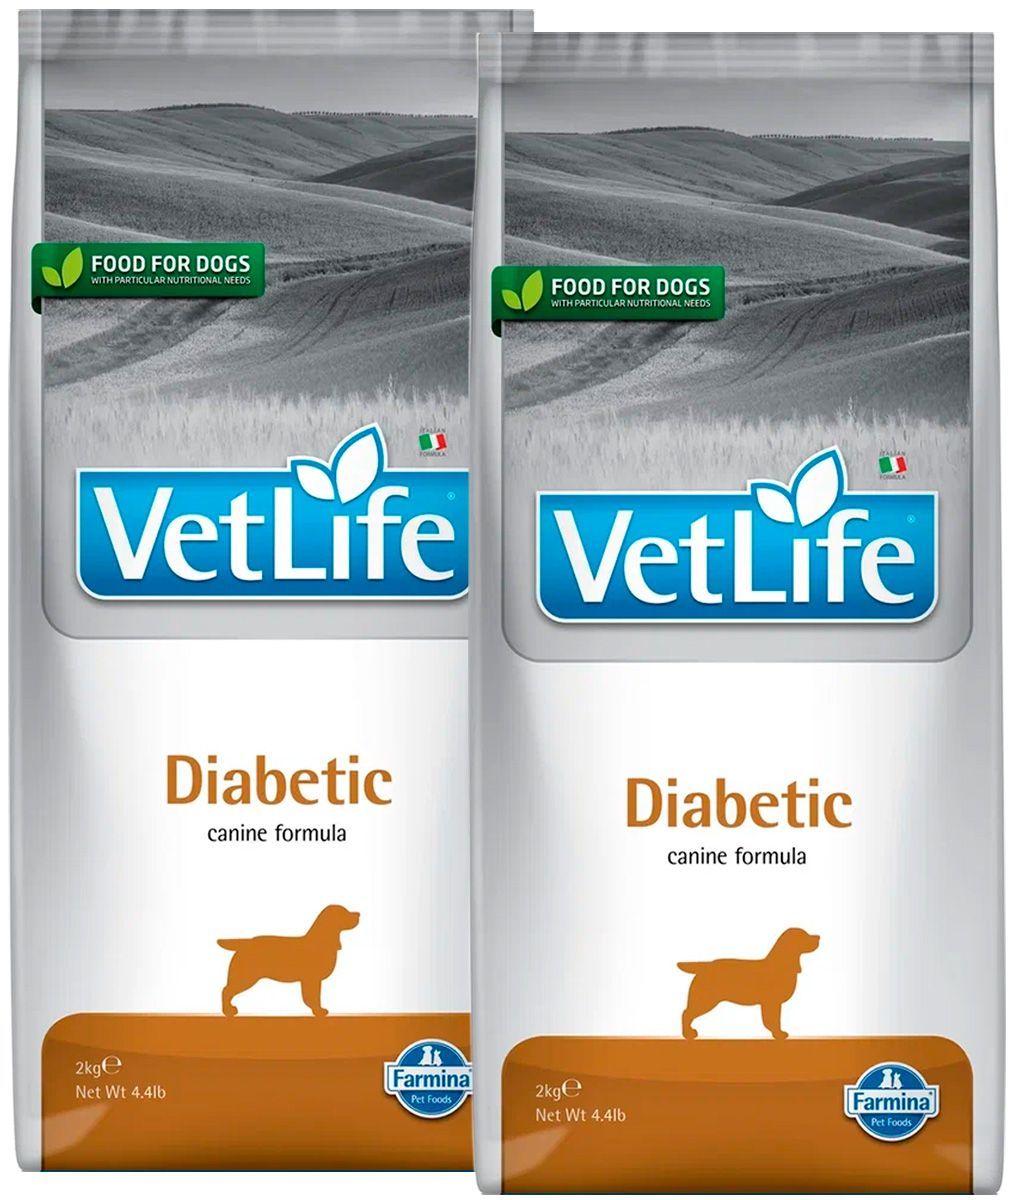 Vet Life Diabetic корм для собак. Farmina vet Life Dog Diabetic. Корм для кошек для диабетиков Фармина. Корм для собак Farmina vet Life при сахарном диабете 12 кг. Farmina vet life для кошек купить